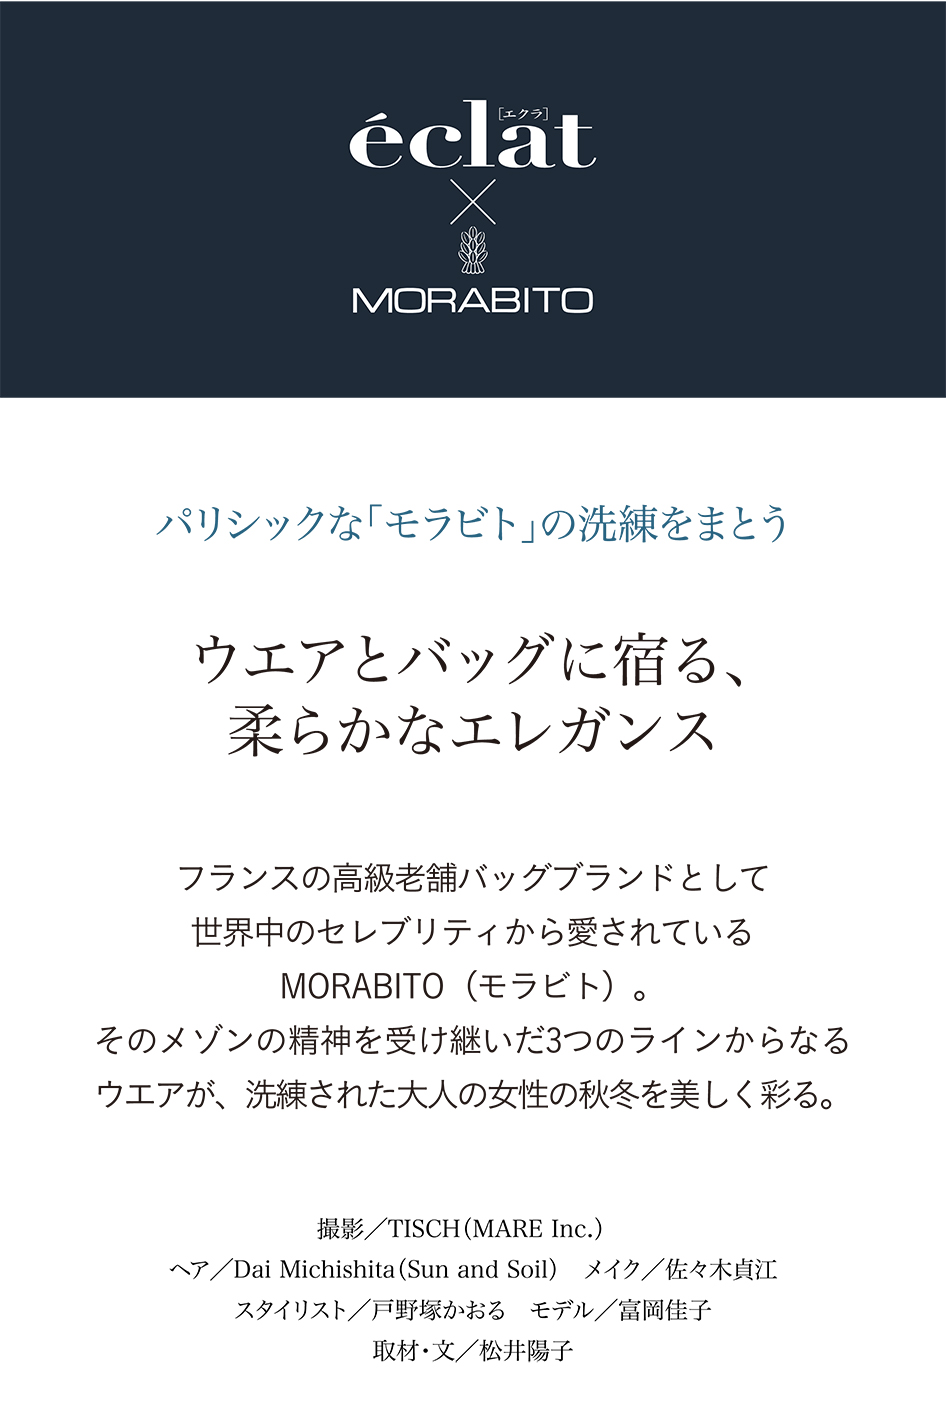 eclat11月号 × MORABITO